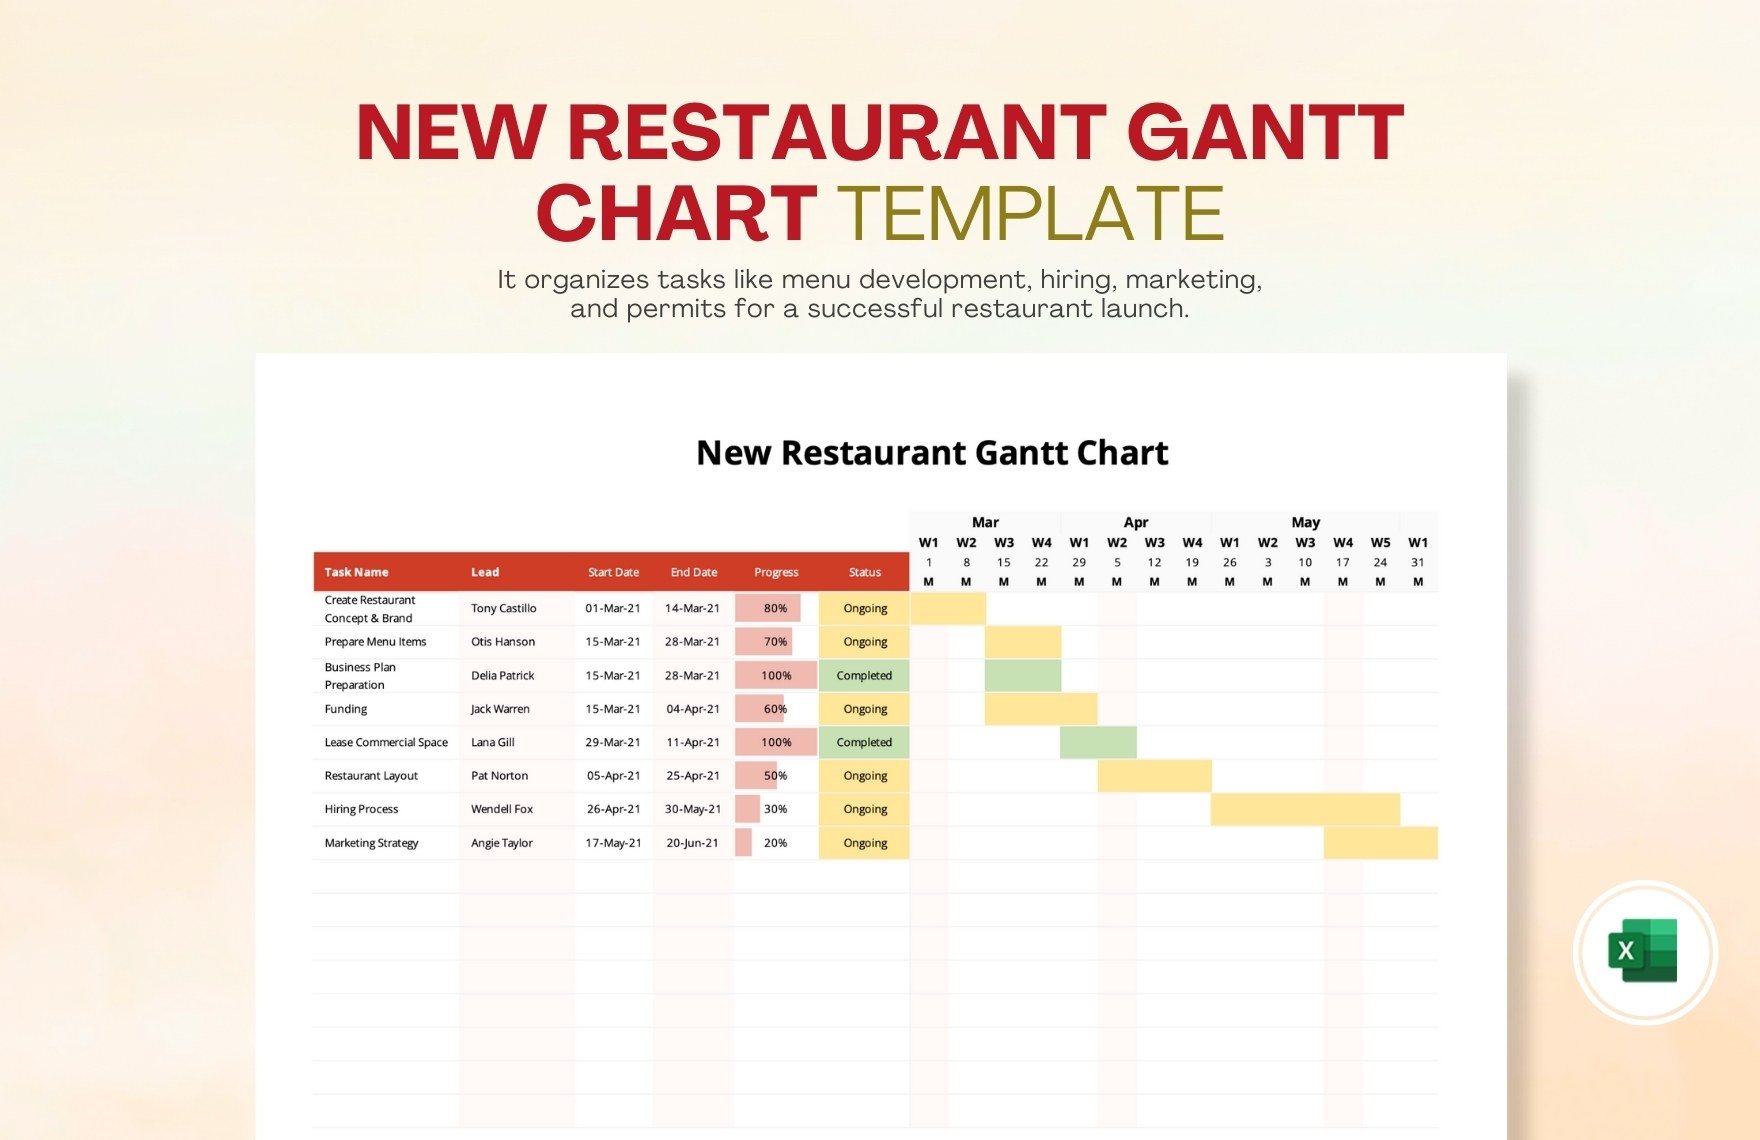 New Restaurant Gantt Chart Template